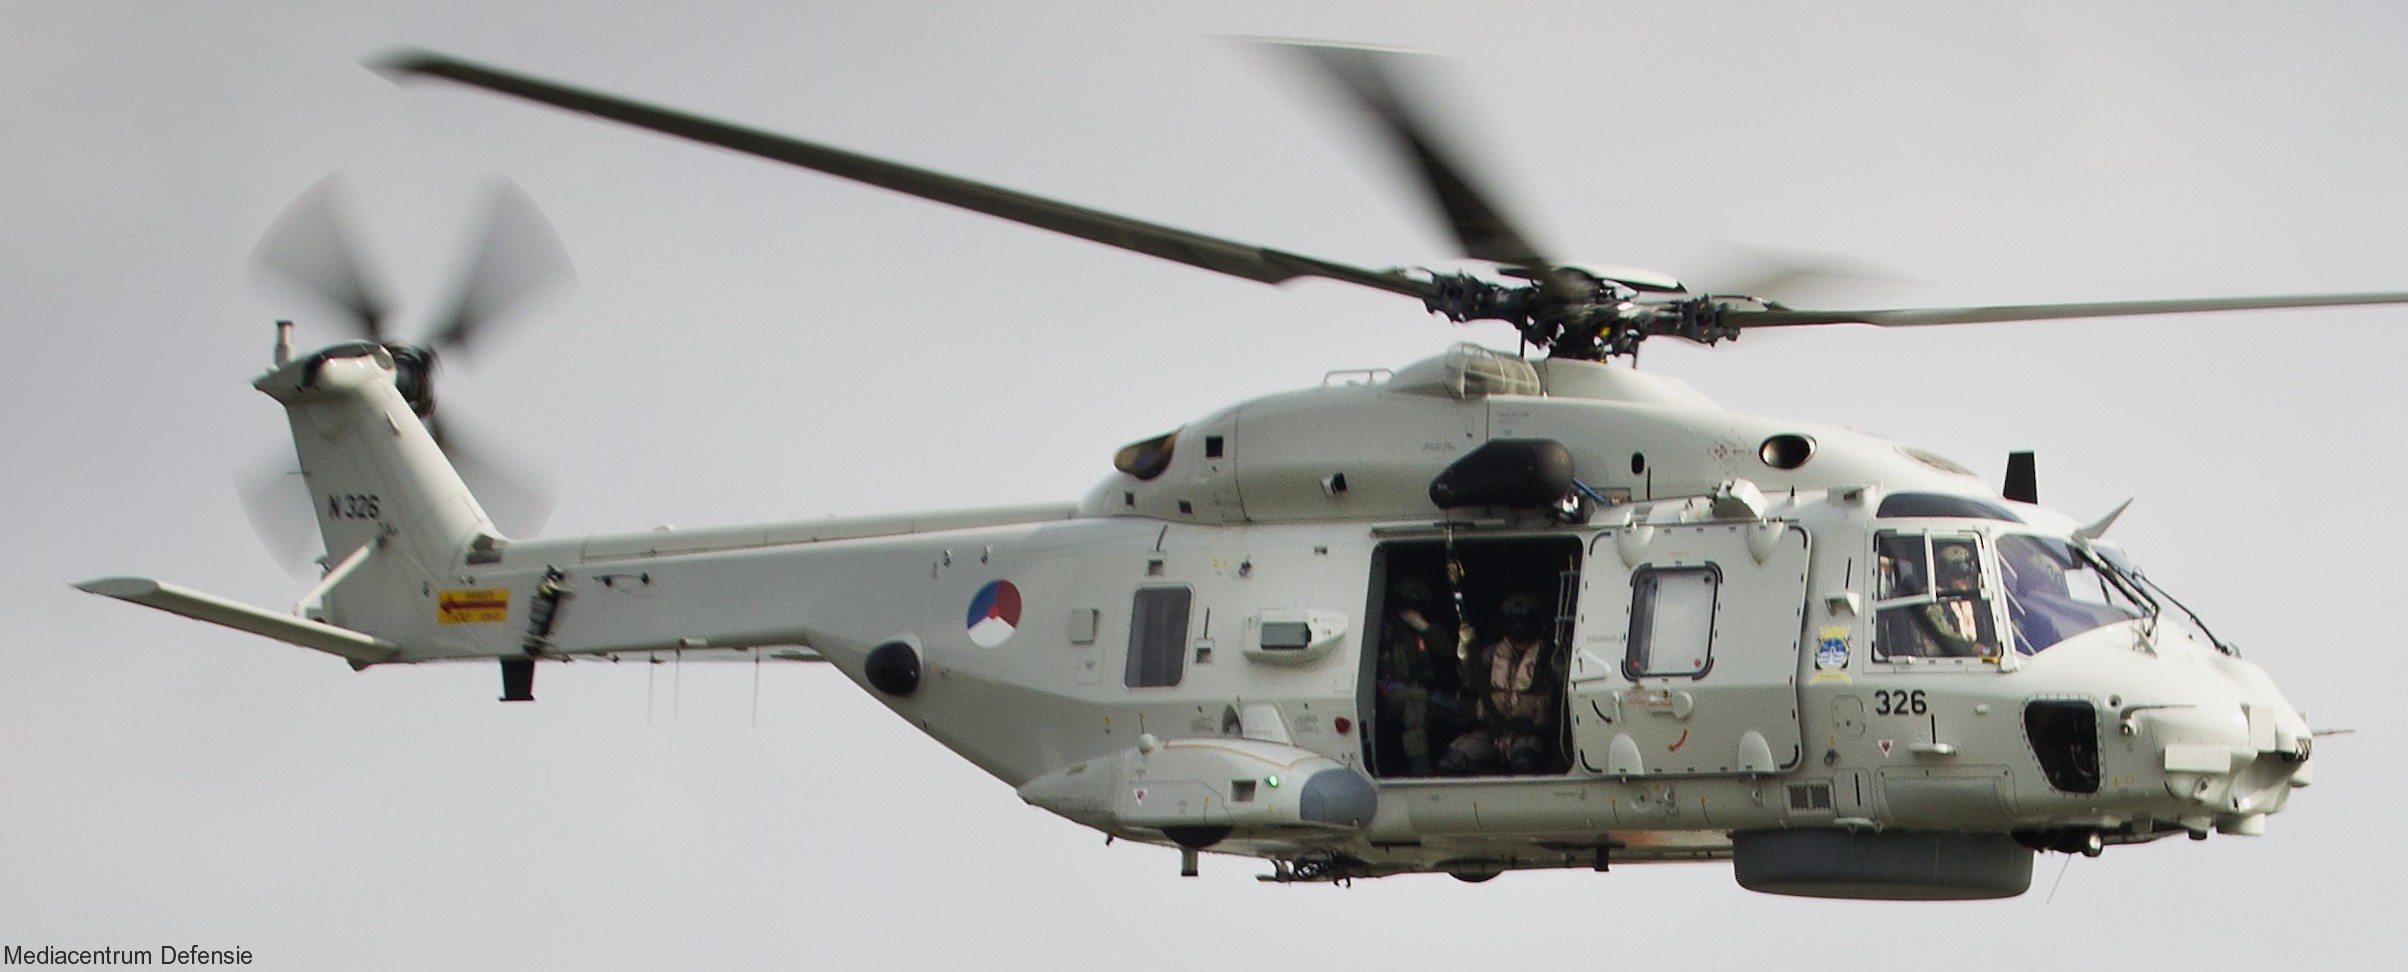 nh90 nfh helicopter royal netherlands navy koninklijke marine n-326 04